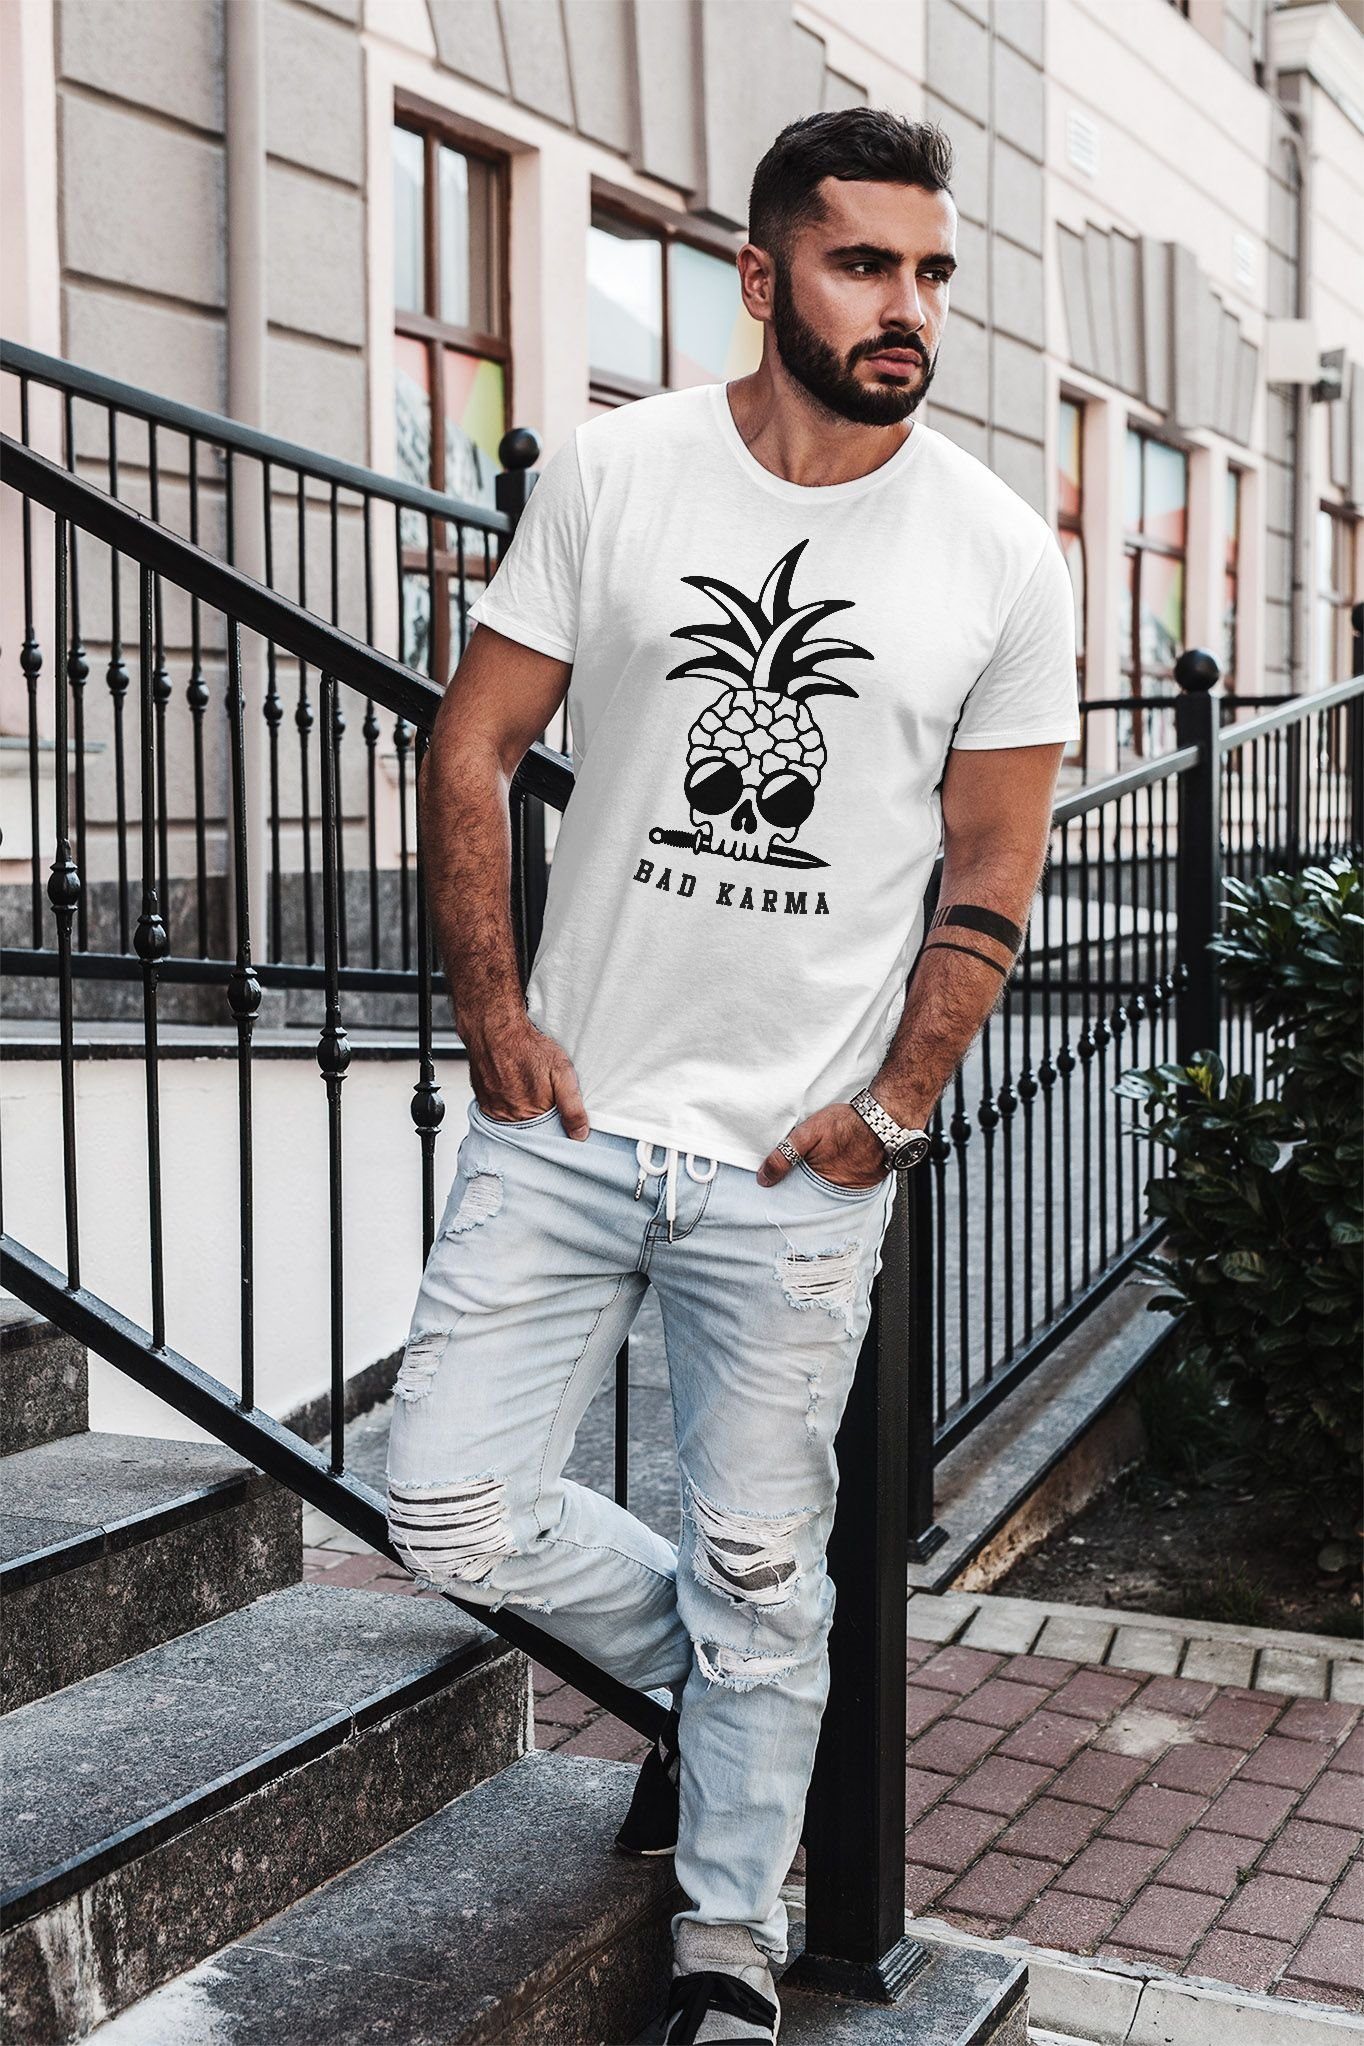 Karma Slim Print Neverless® mit Pineapple Sonnenbrille Fit Print-Shirt T-Shirt Neverless weiß Skull Totenkopf Herren Ananas Bad